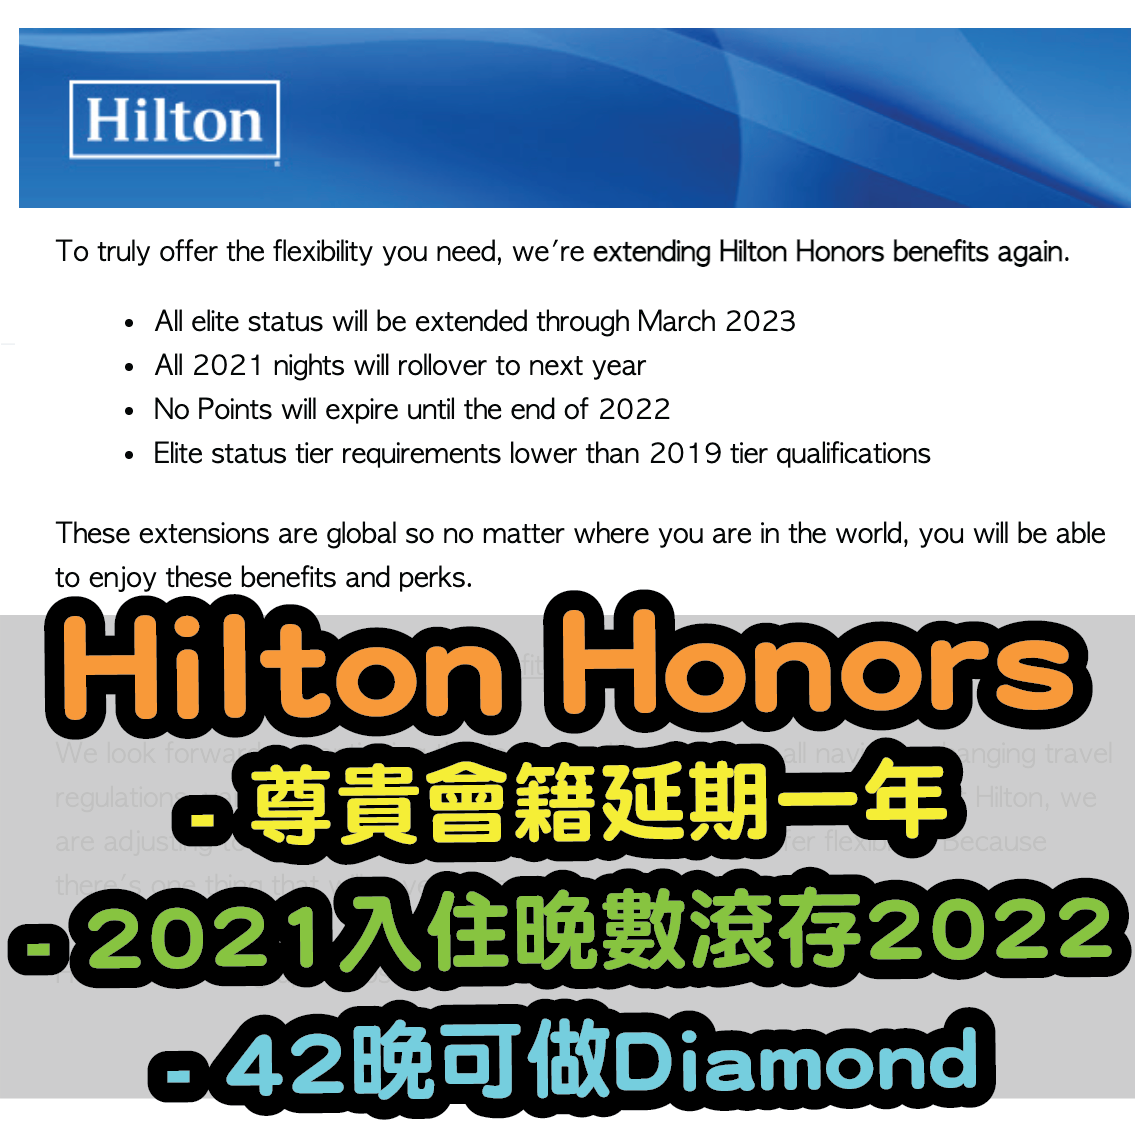 hilton promote-03